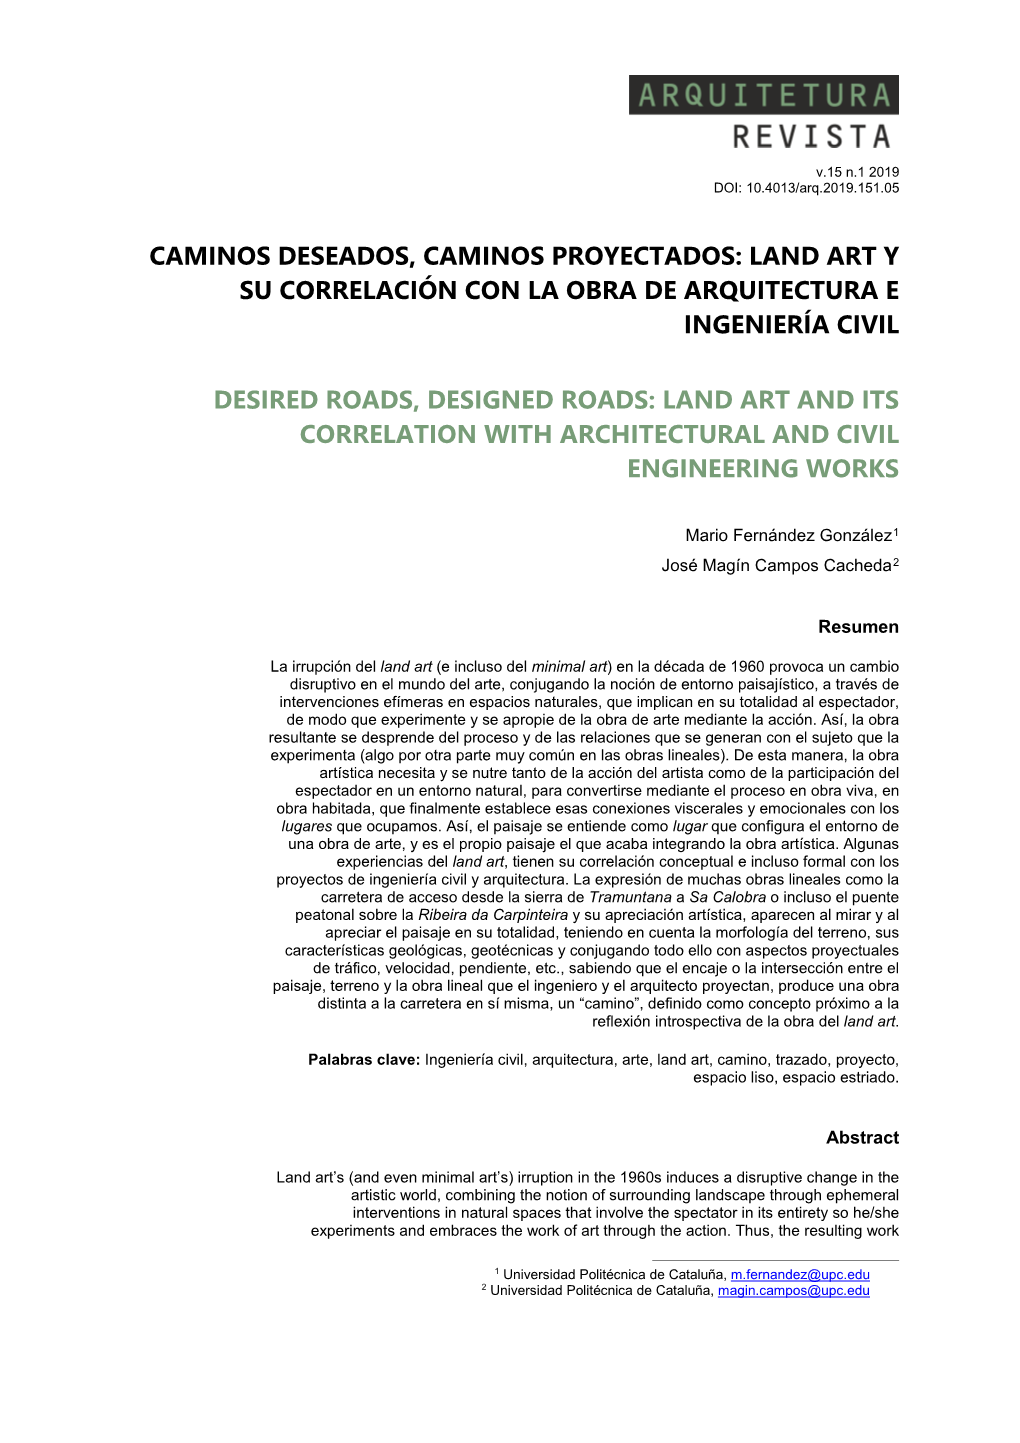 Land Art Y Su Correlación Con La Obra De Arquitectura E Ingeniería Civil